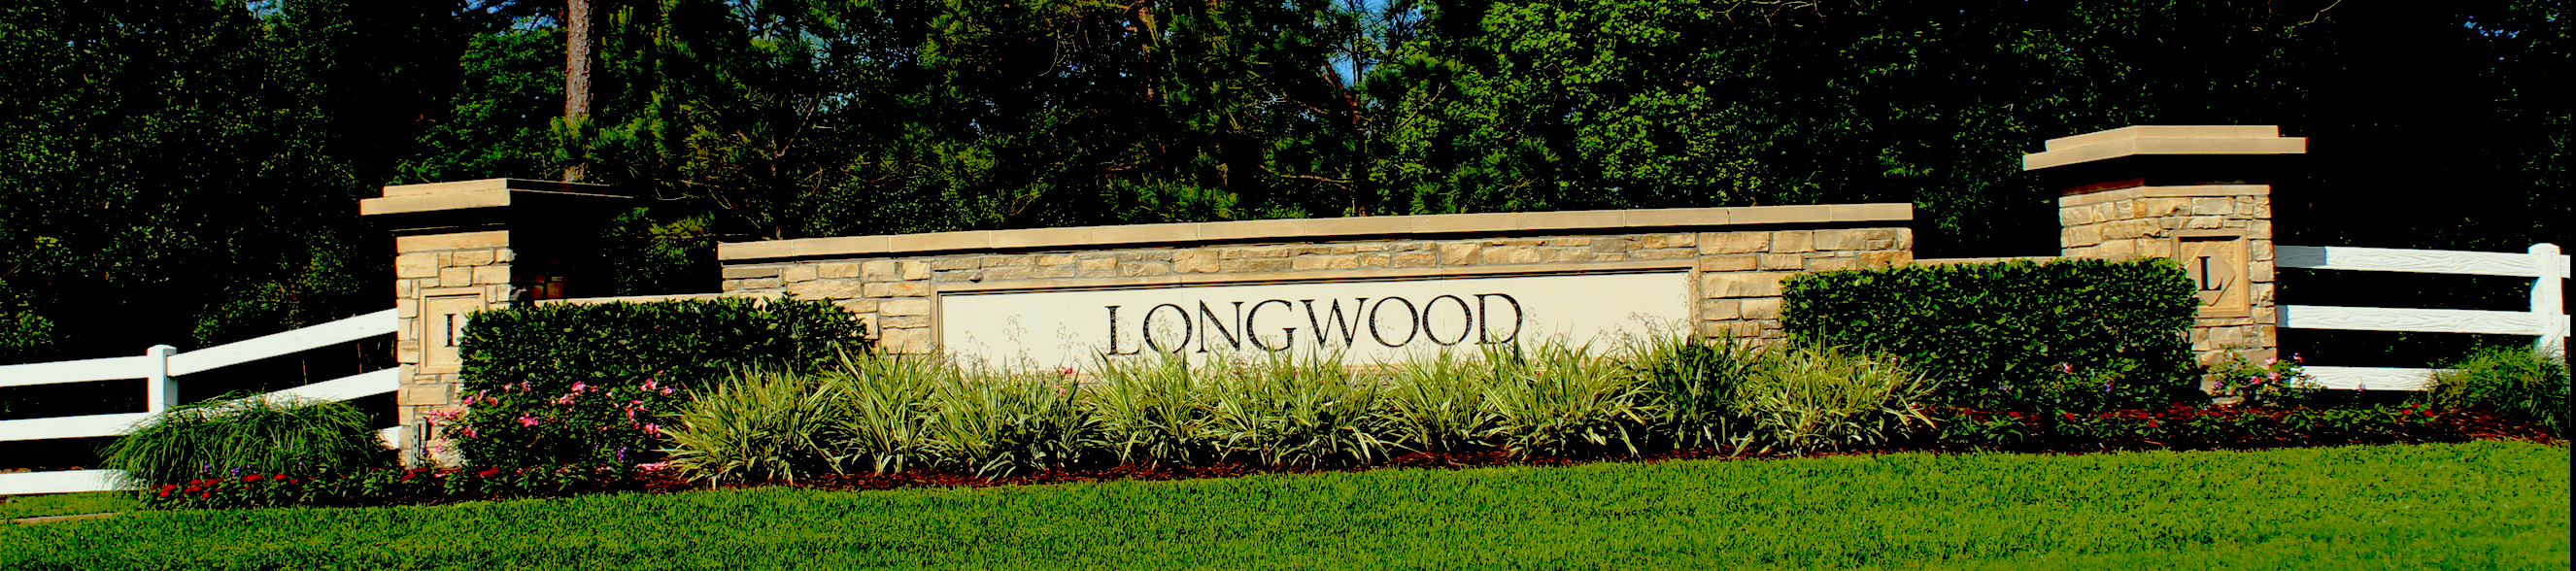 Longwood Village HOA, Inc. cover